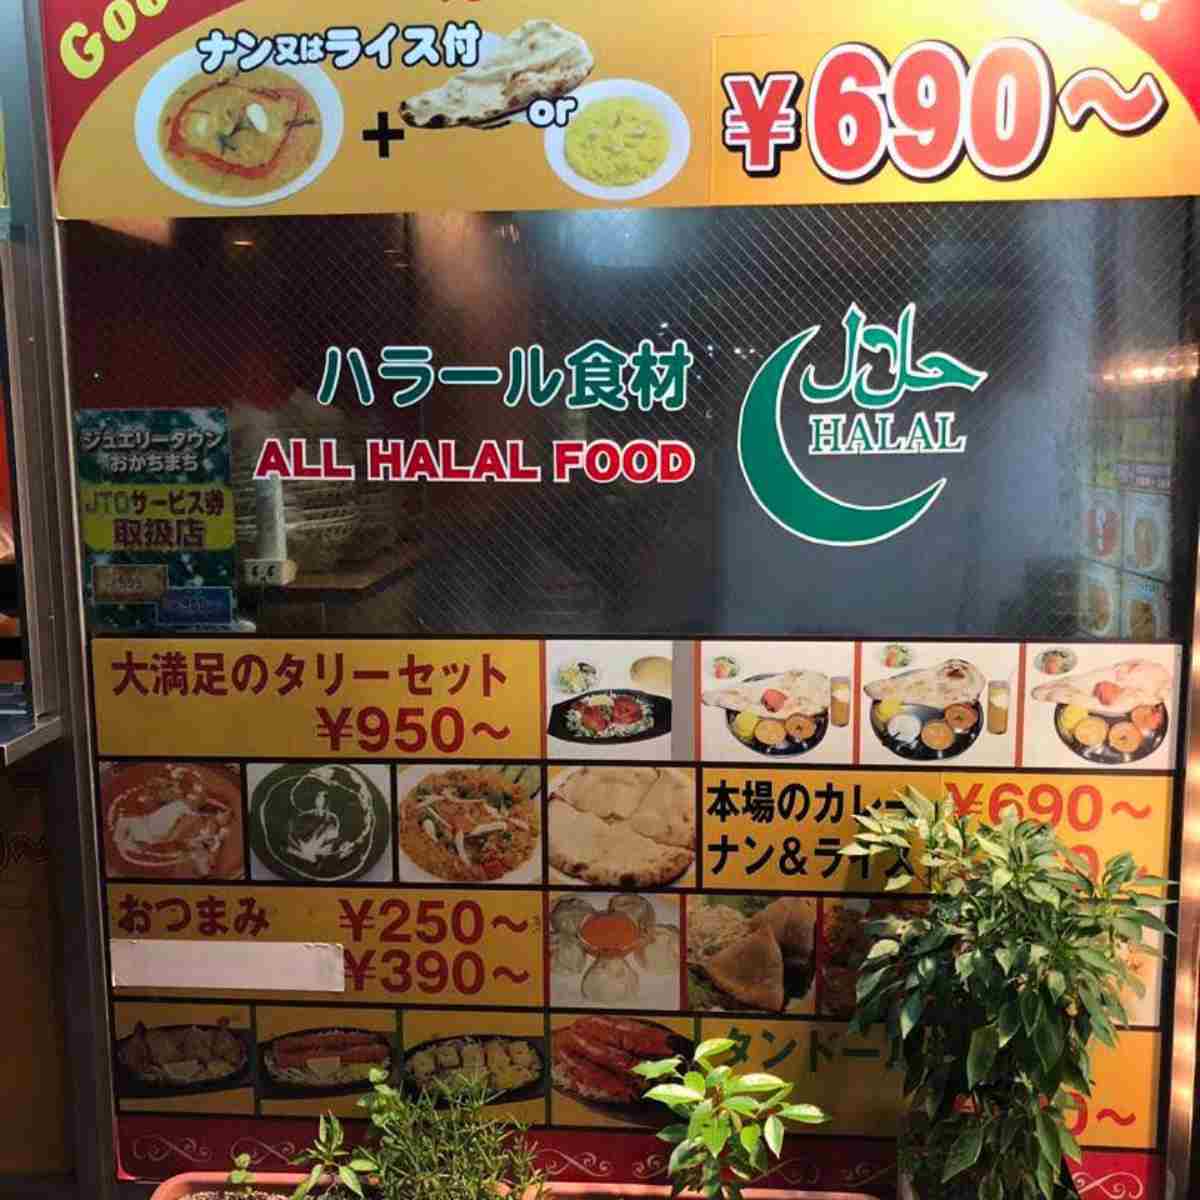 Japan restaurant halal sign